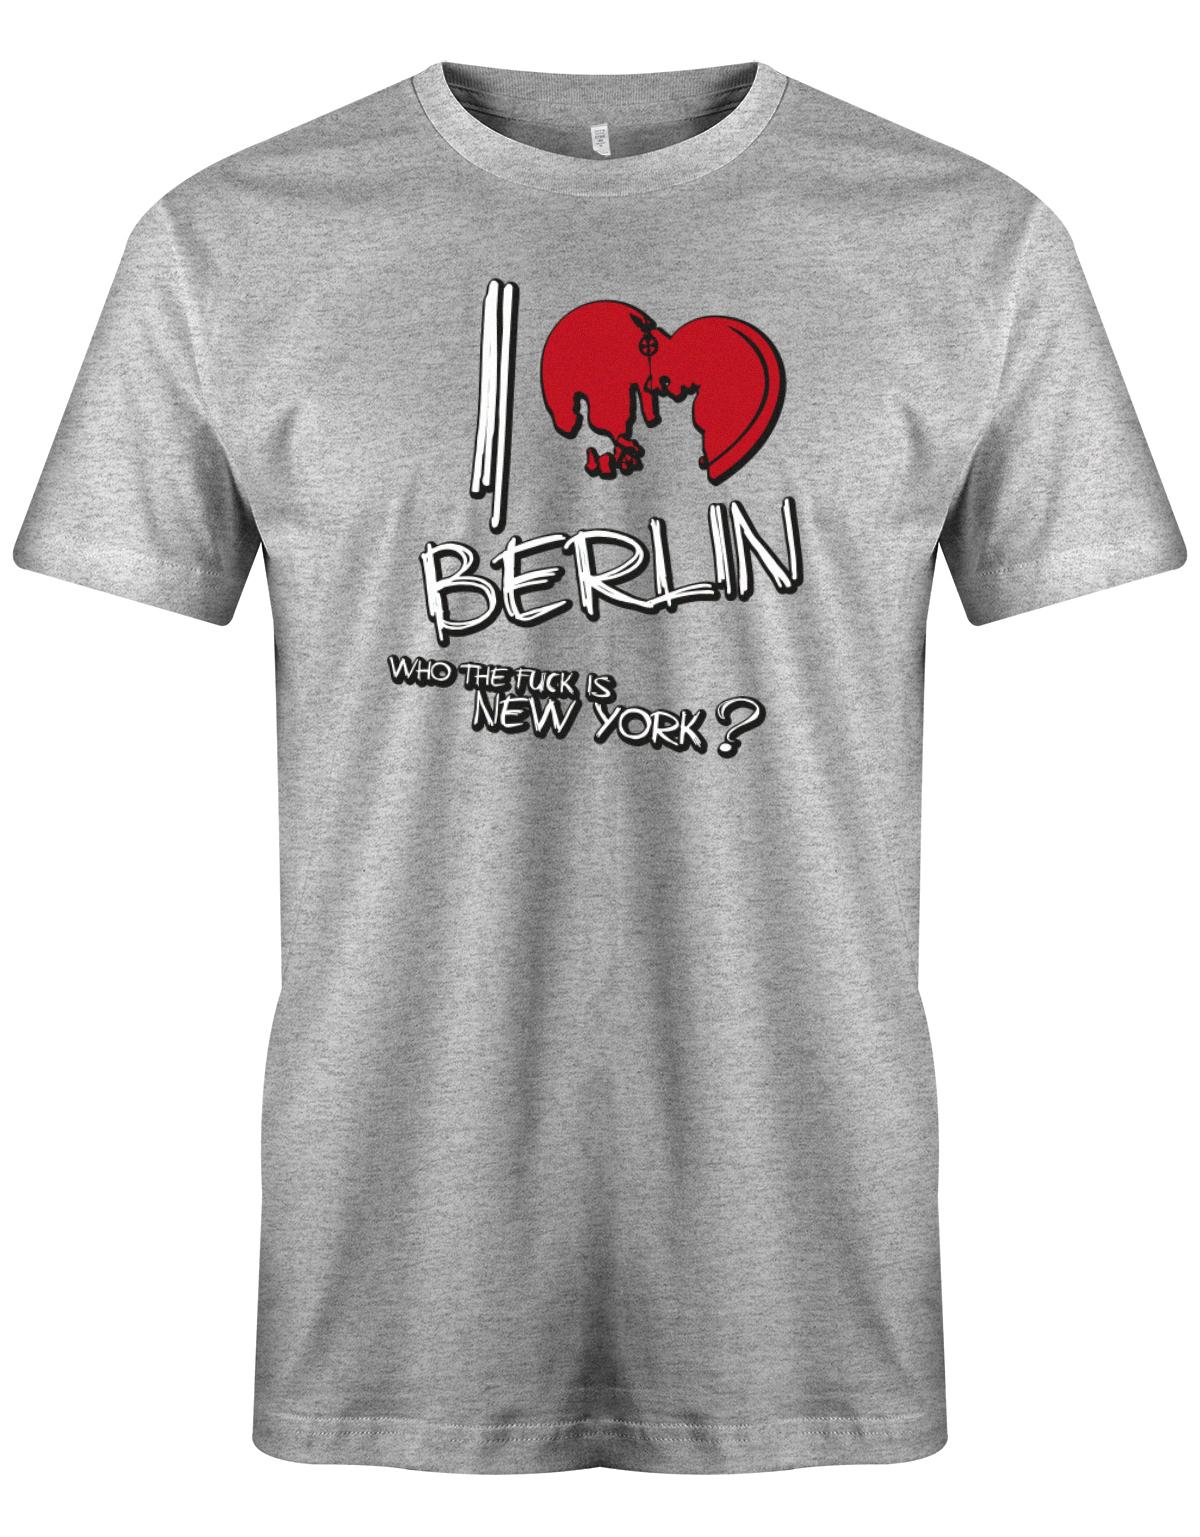 I-love-Berlin-Wahrzeichen-Who-the-fuck-is-new-york-Herren-Berliner-Shirt-GraurwDruzx19UOlm